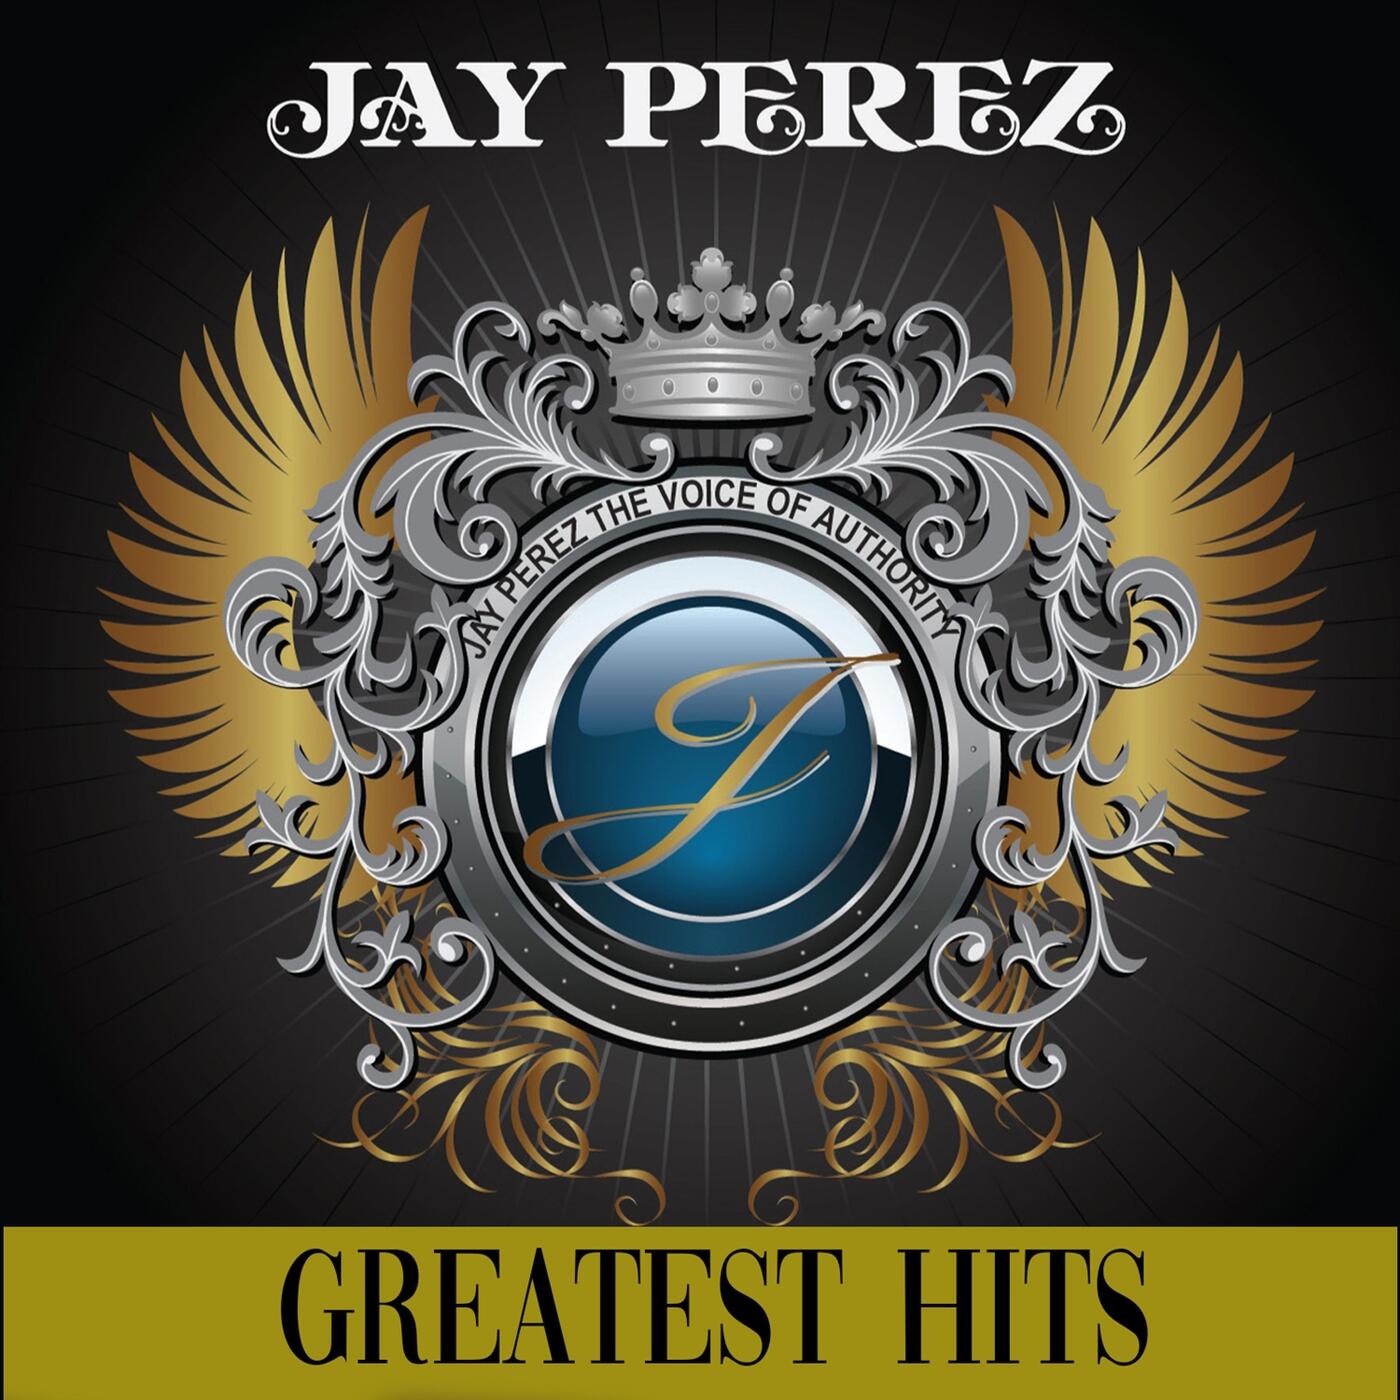 Jay Pérez Greatest Hits iHeart